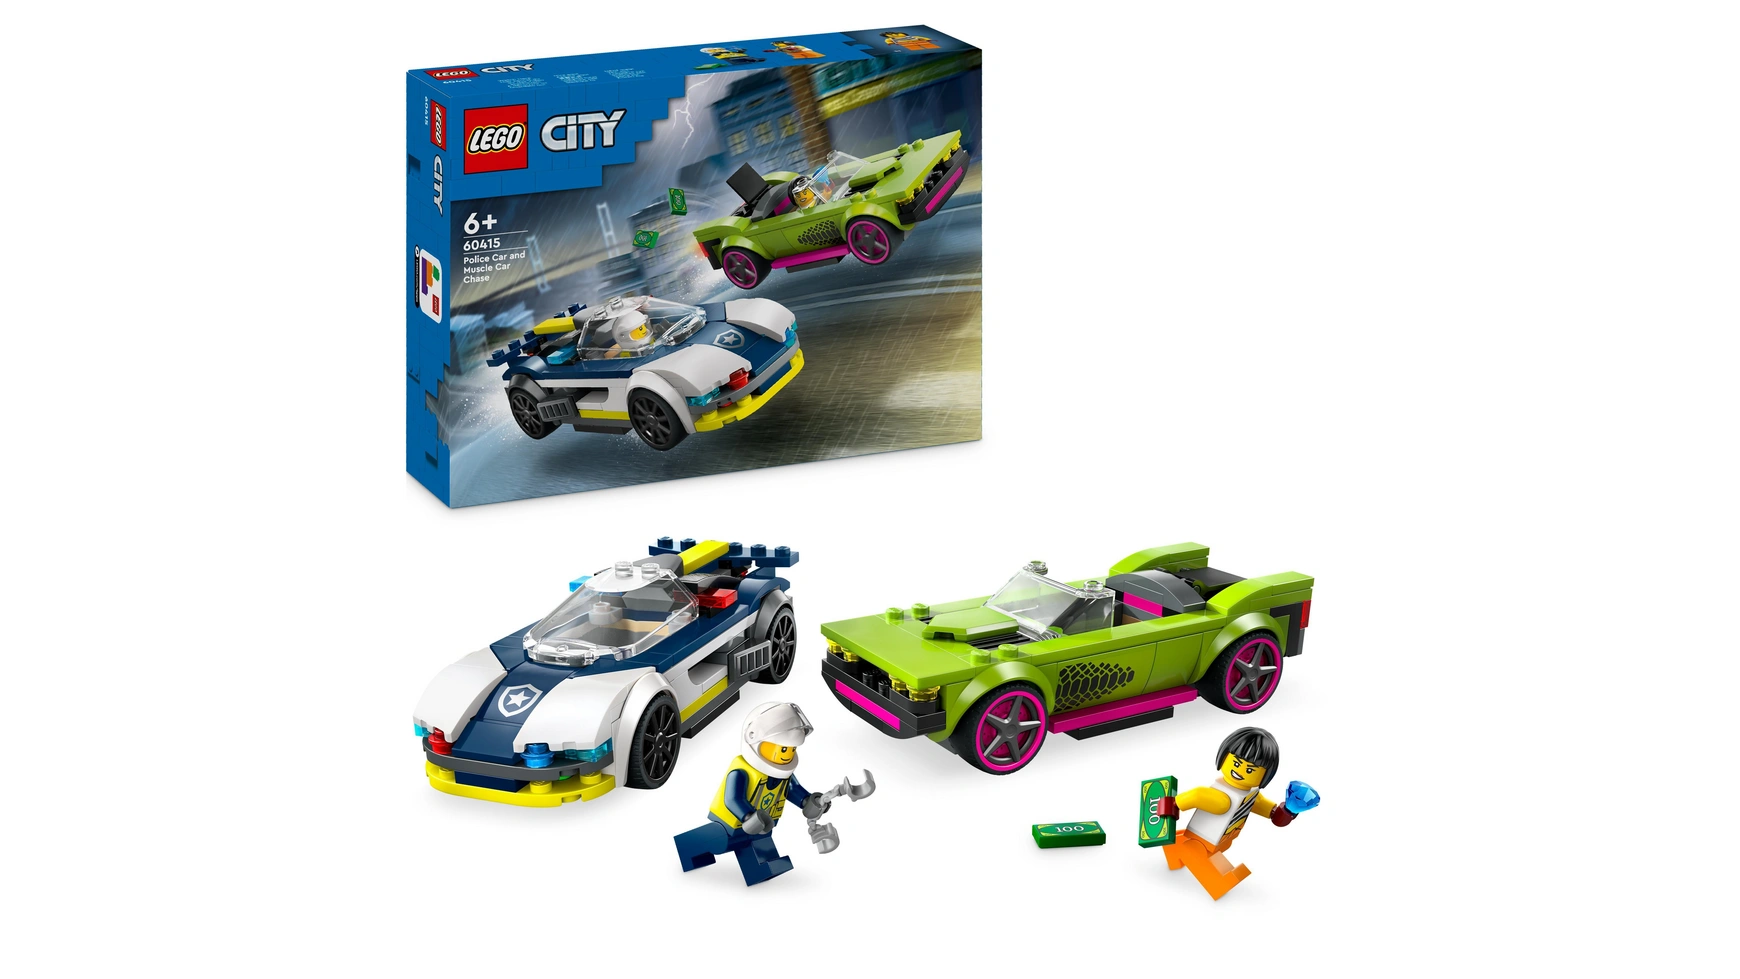 Lego City Погоня на полицейской машине и игрушечный автомобиль с мускулистыми машинами